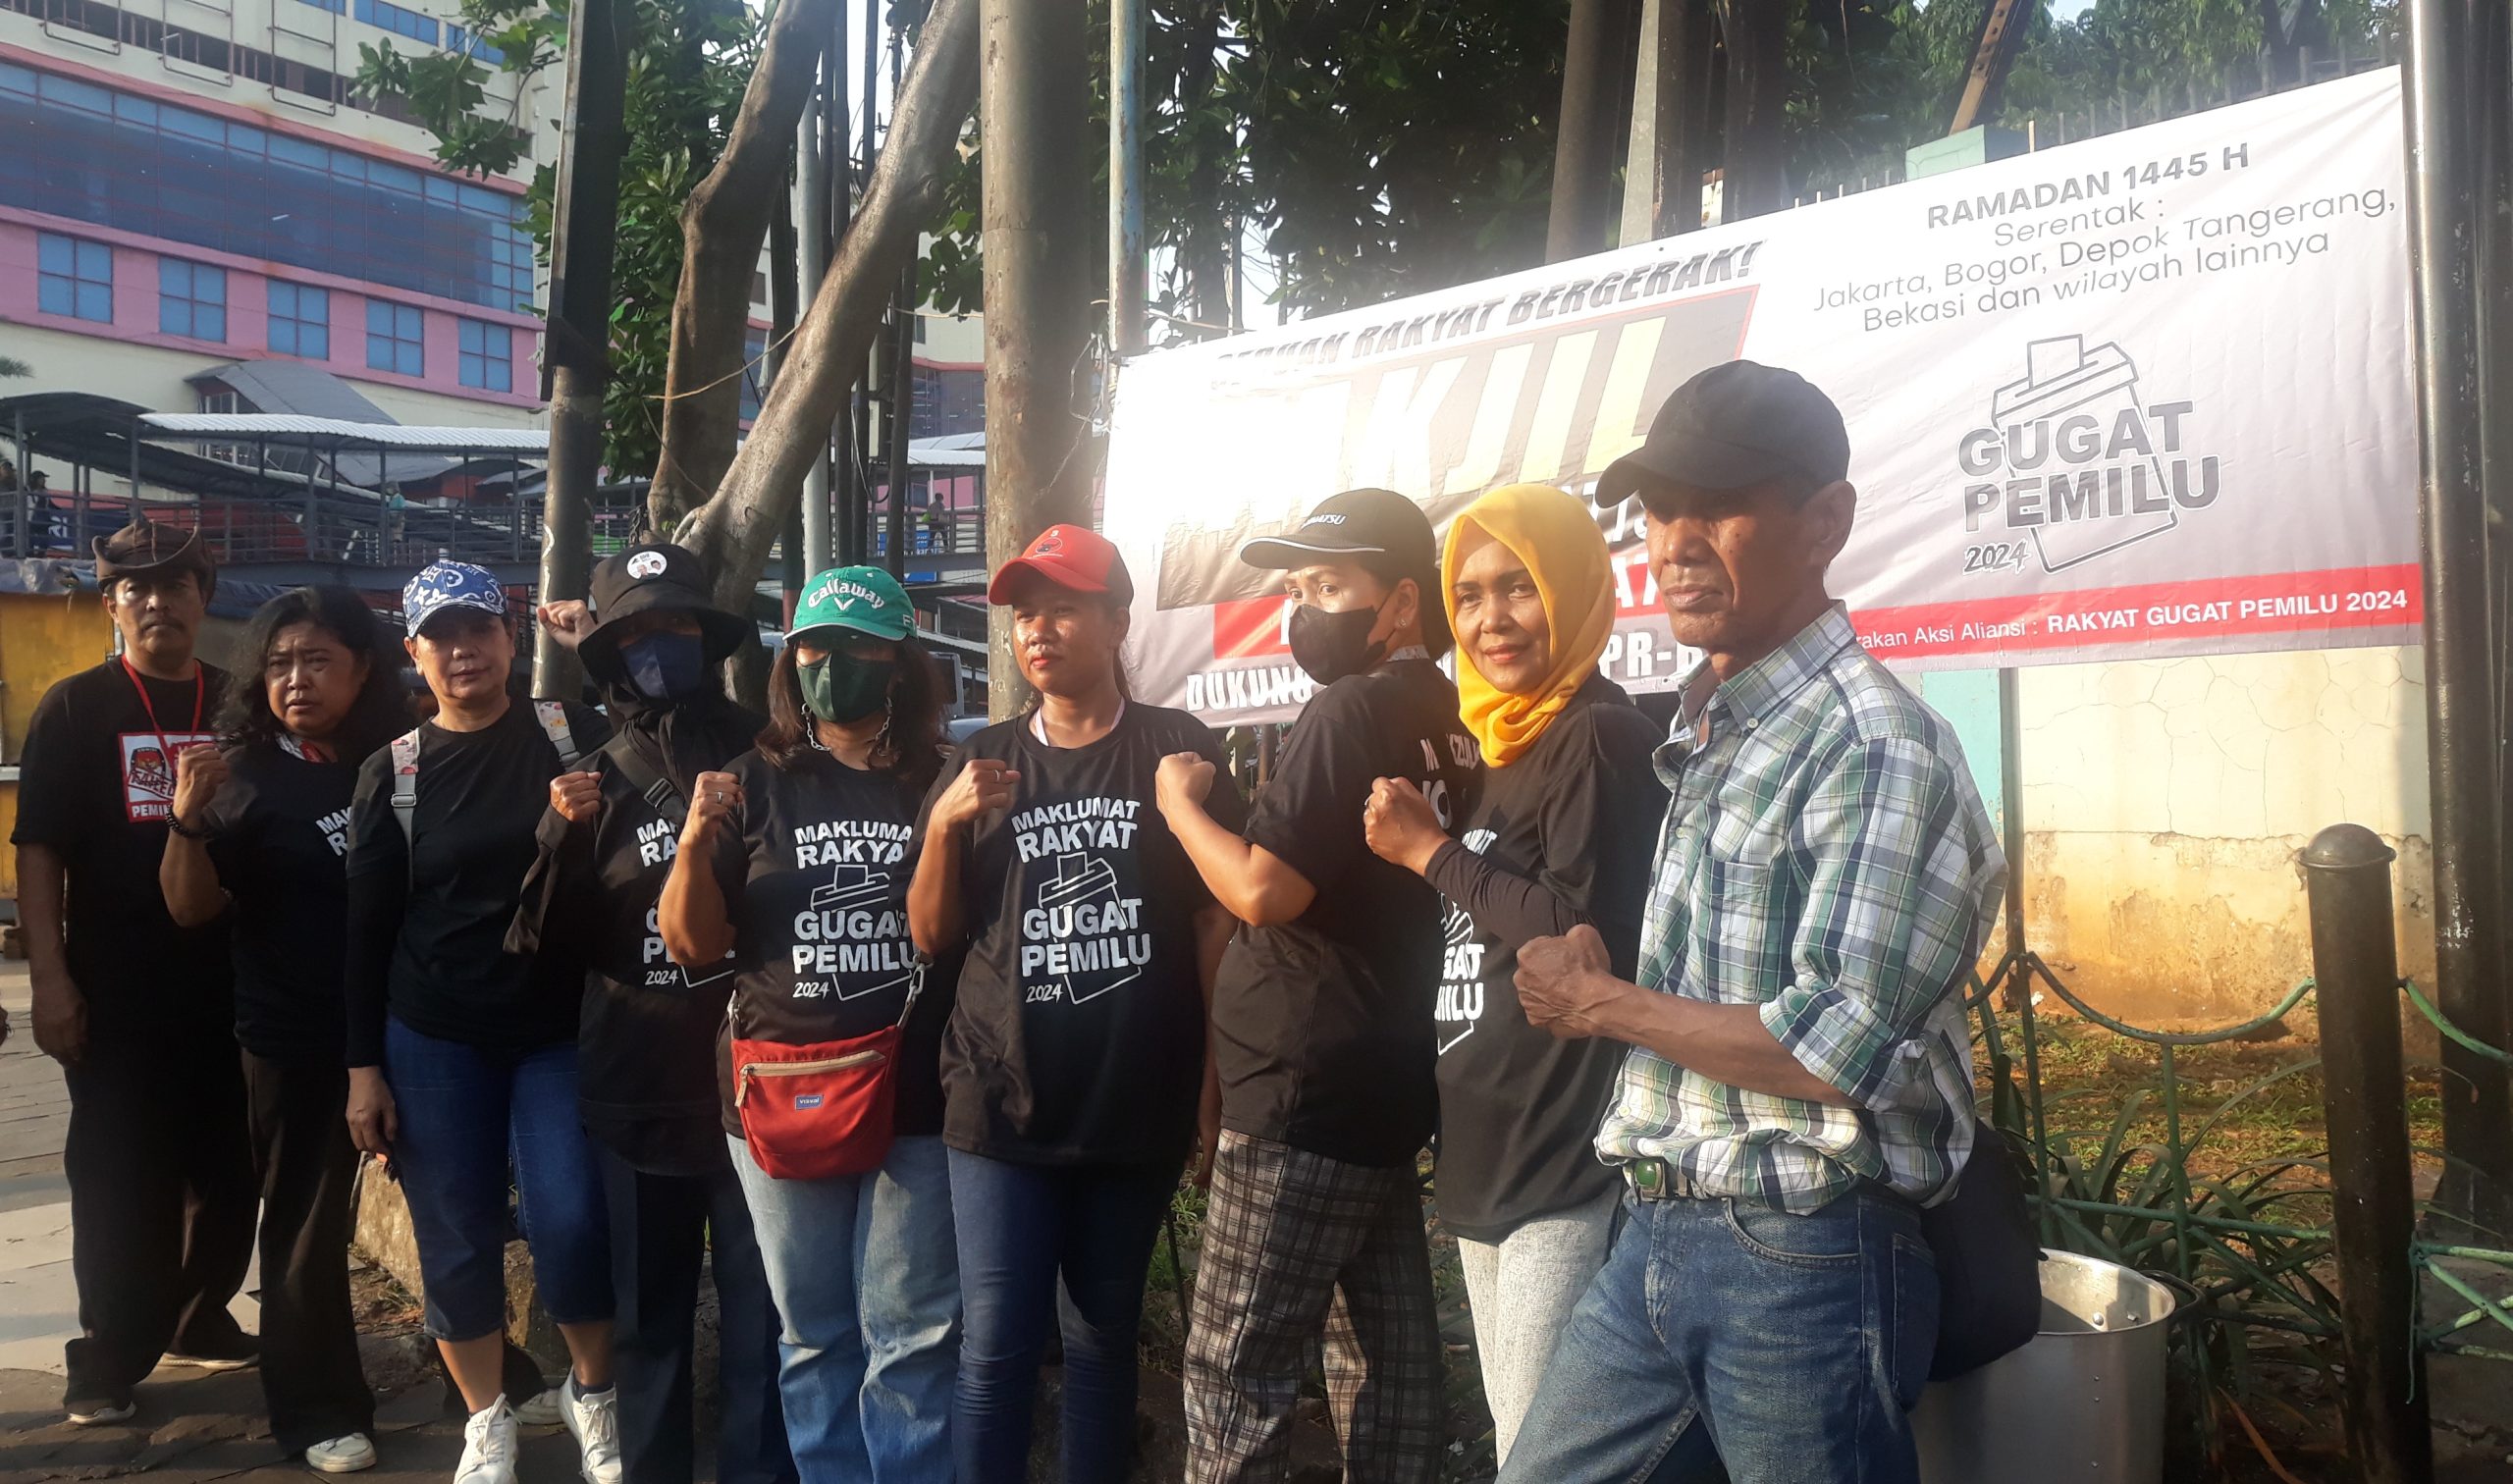 Masyarakat yang tergabung dalam Aliansi Masyarakat Gugat Pemilu dalam aksi bagi takjil di Jalan Cililitan Besar. (dokpri)